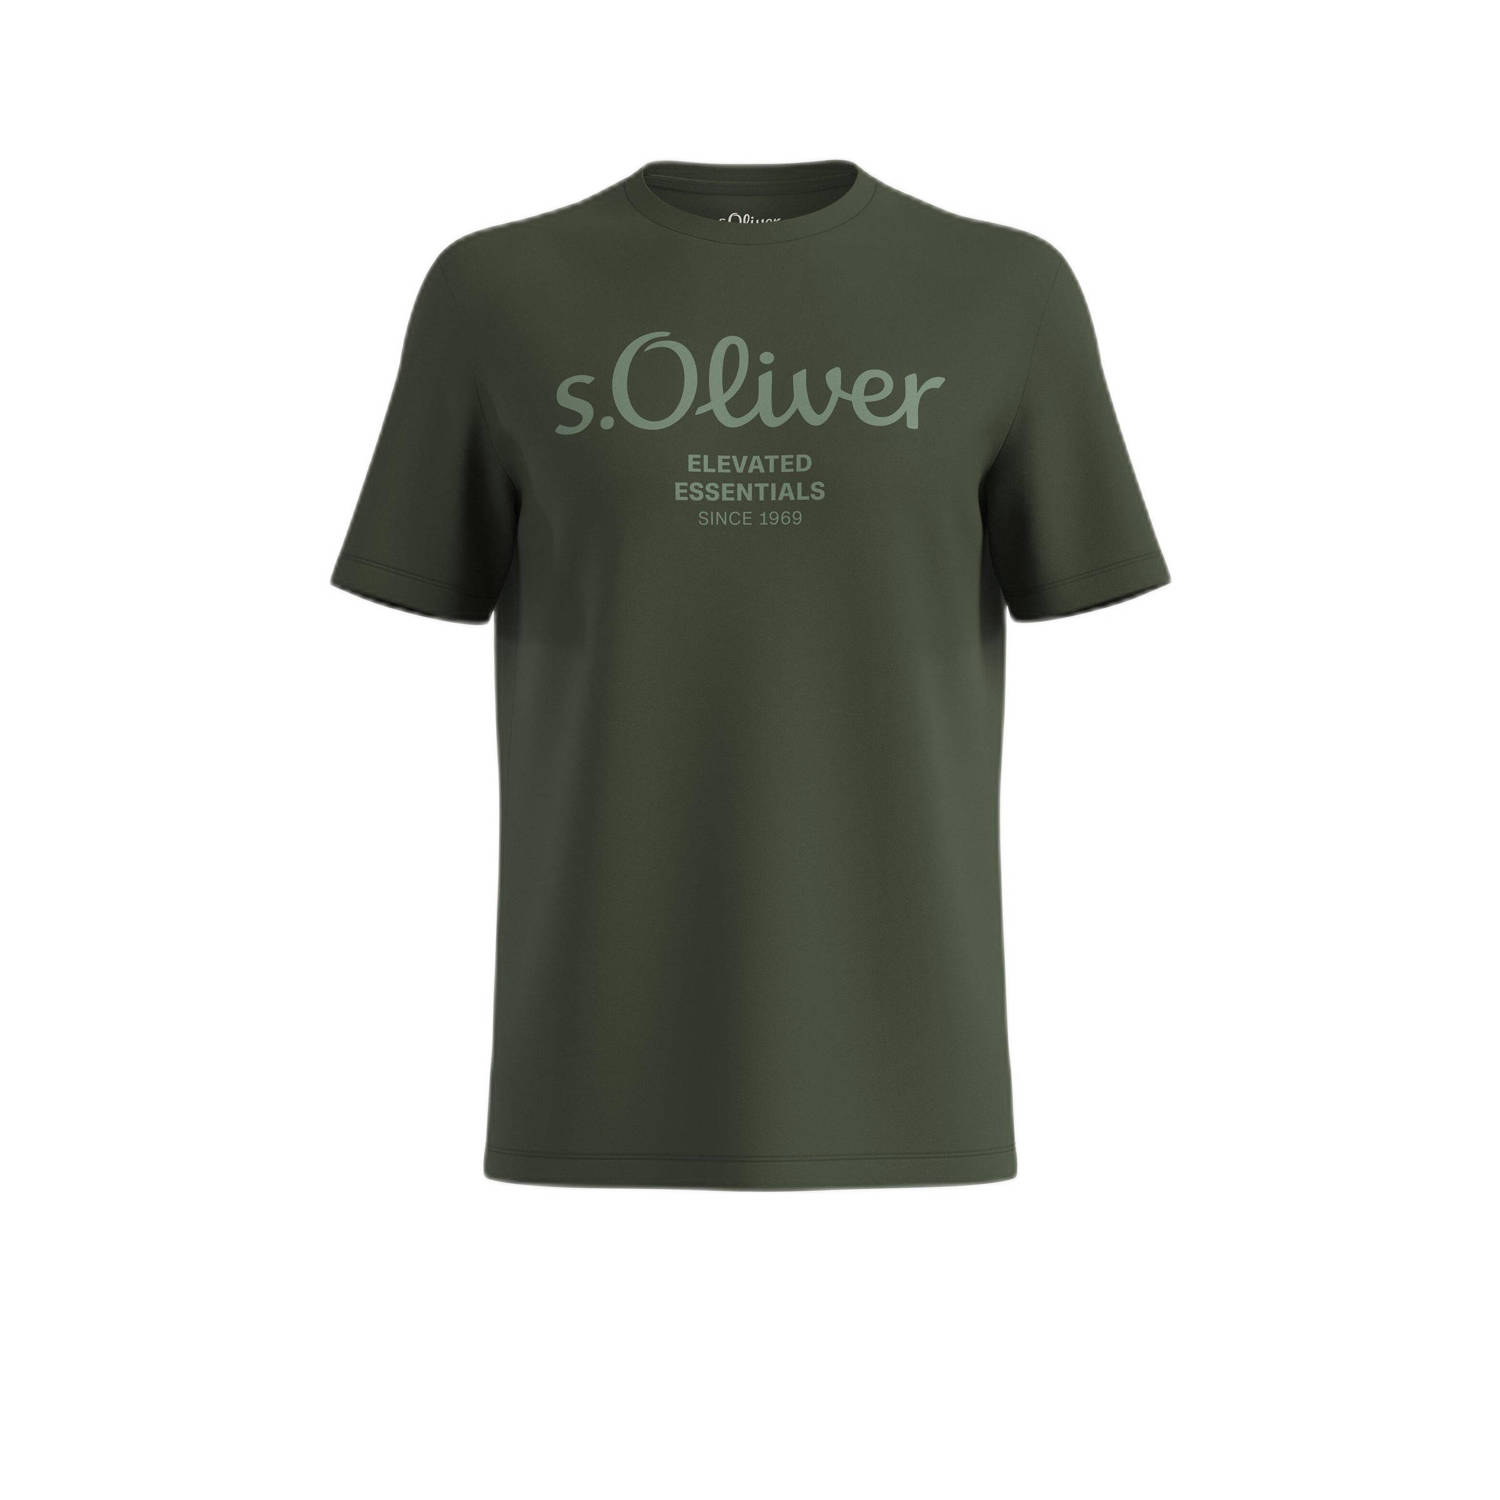 S.Oliver T-shirt met printopdruk donkergroen